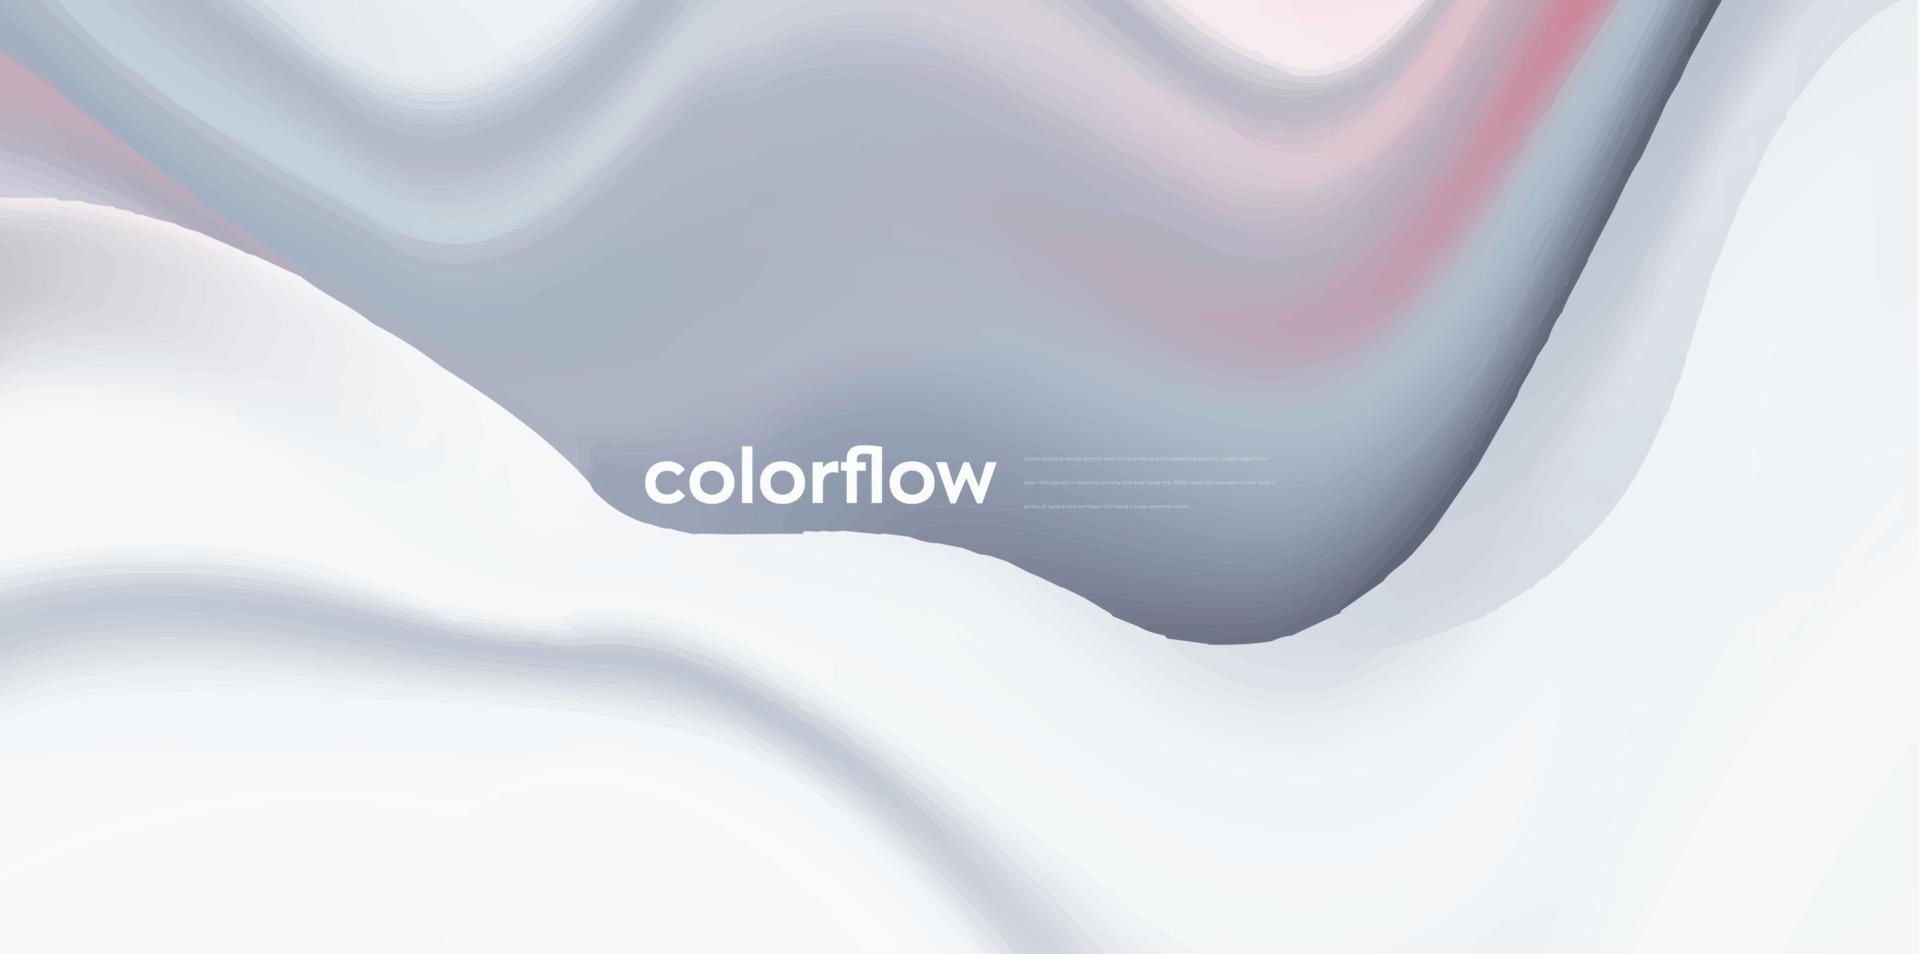 färgglad flytande våg bakgrund, dynamisk 3d färgflöde vektorelement för webbplats, broschyr, affisch. färgglada vågiga vektorillustration, modern bakgrundsdesign. vektor